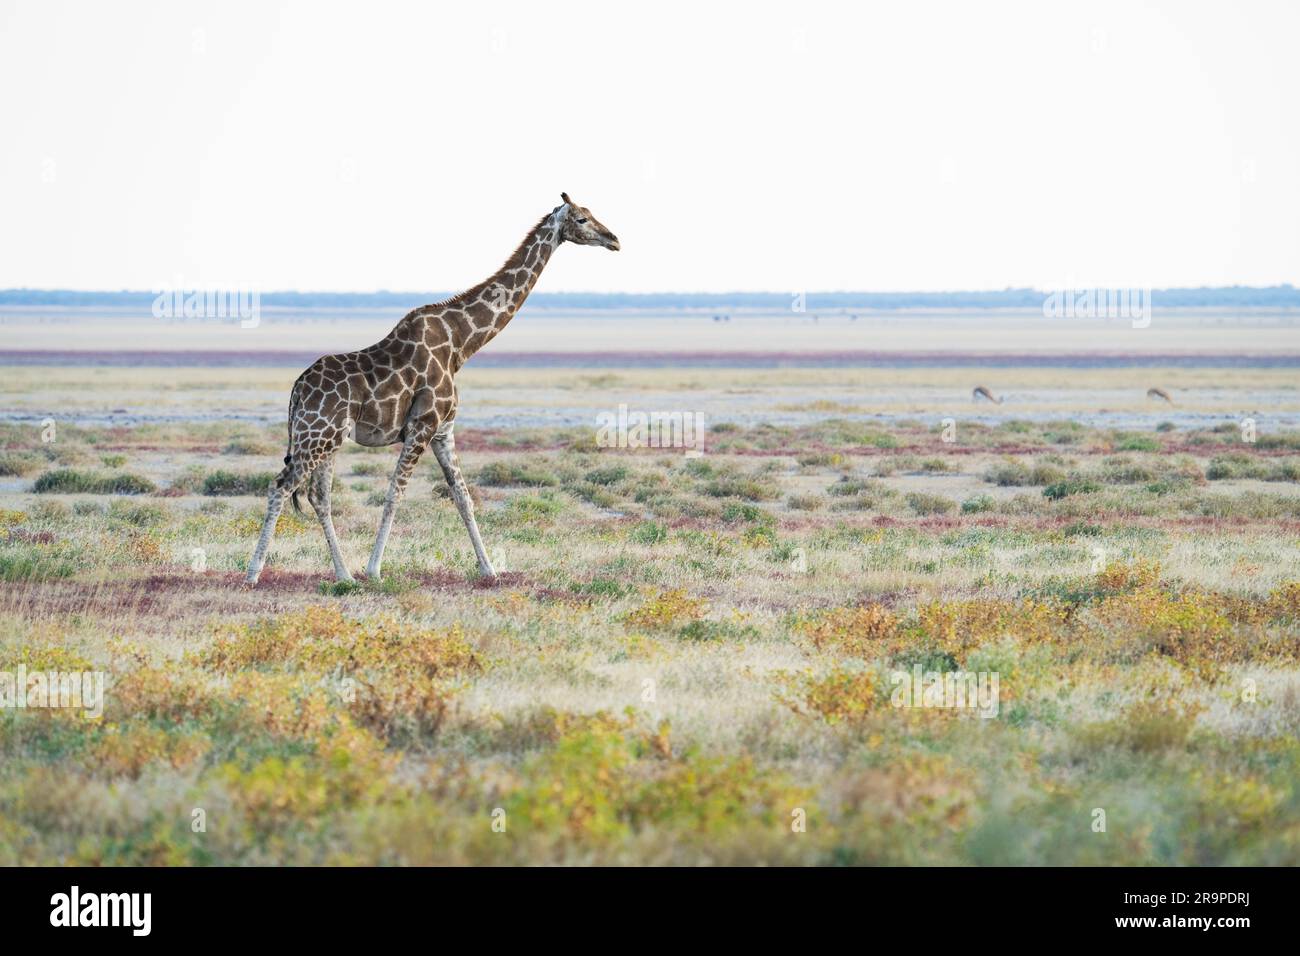 Giraffen durchqueren die Savanne, hinter dem Tier ist eine Salzpfanne. Farbenfrohes Bild. Etosha-Nationalpark, Namibia, Afrika Stockfoto